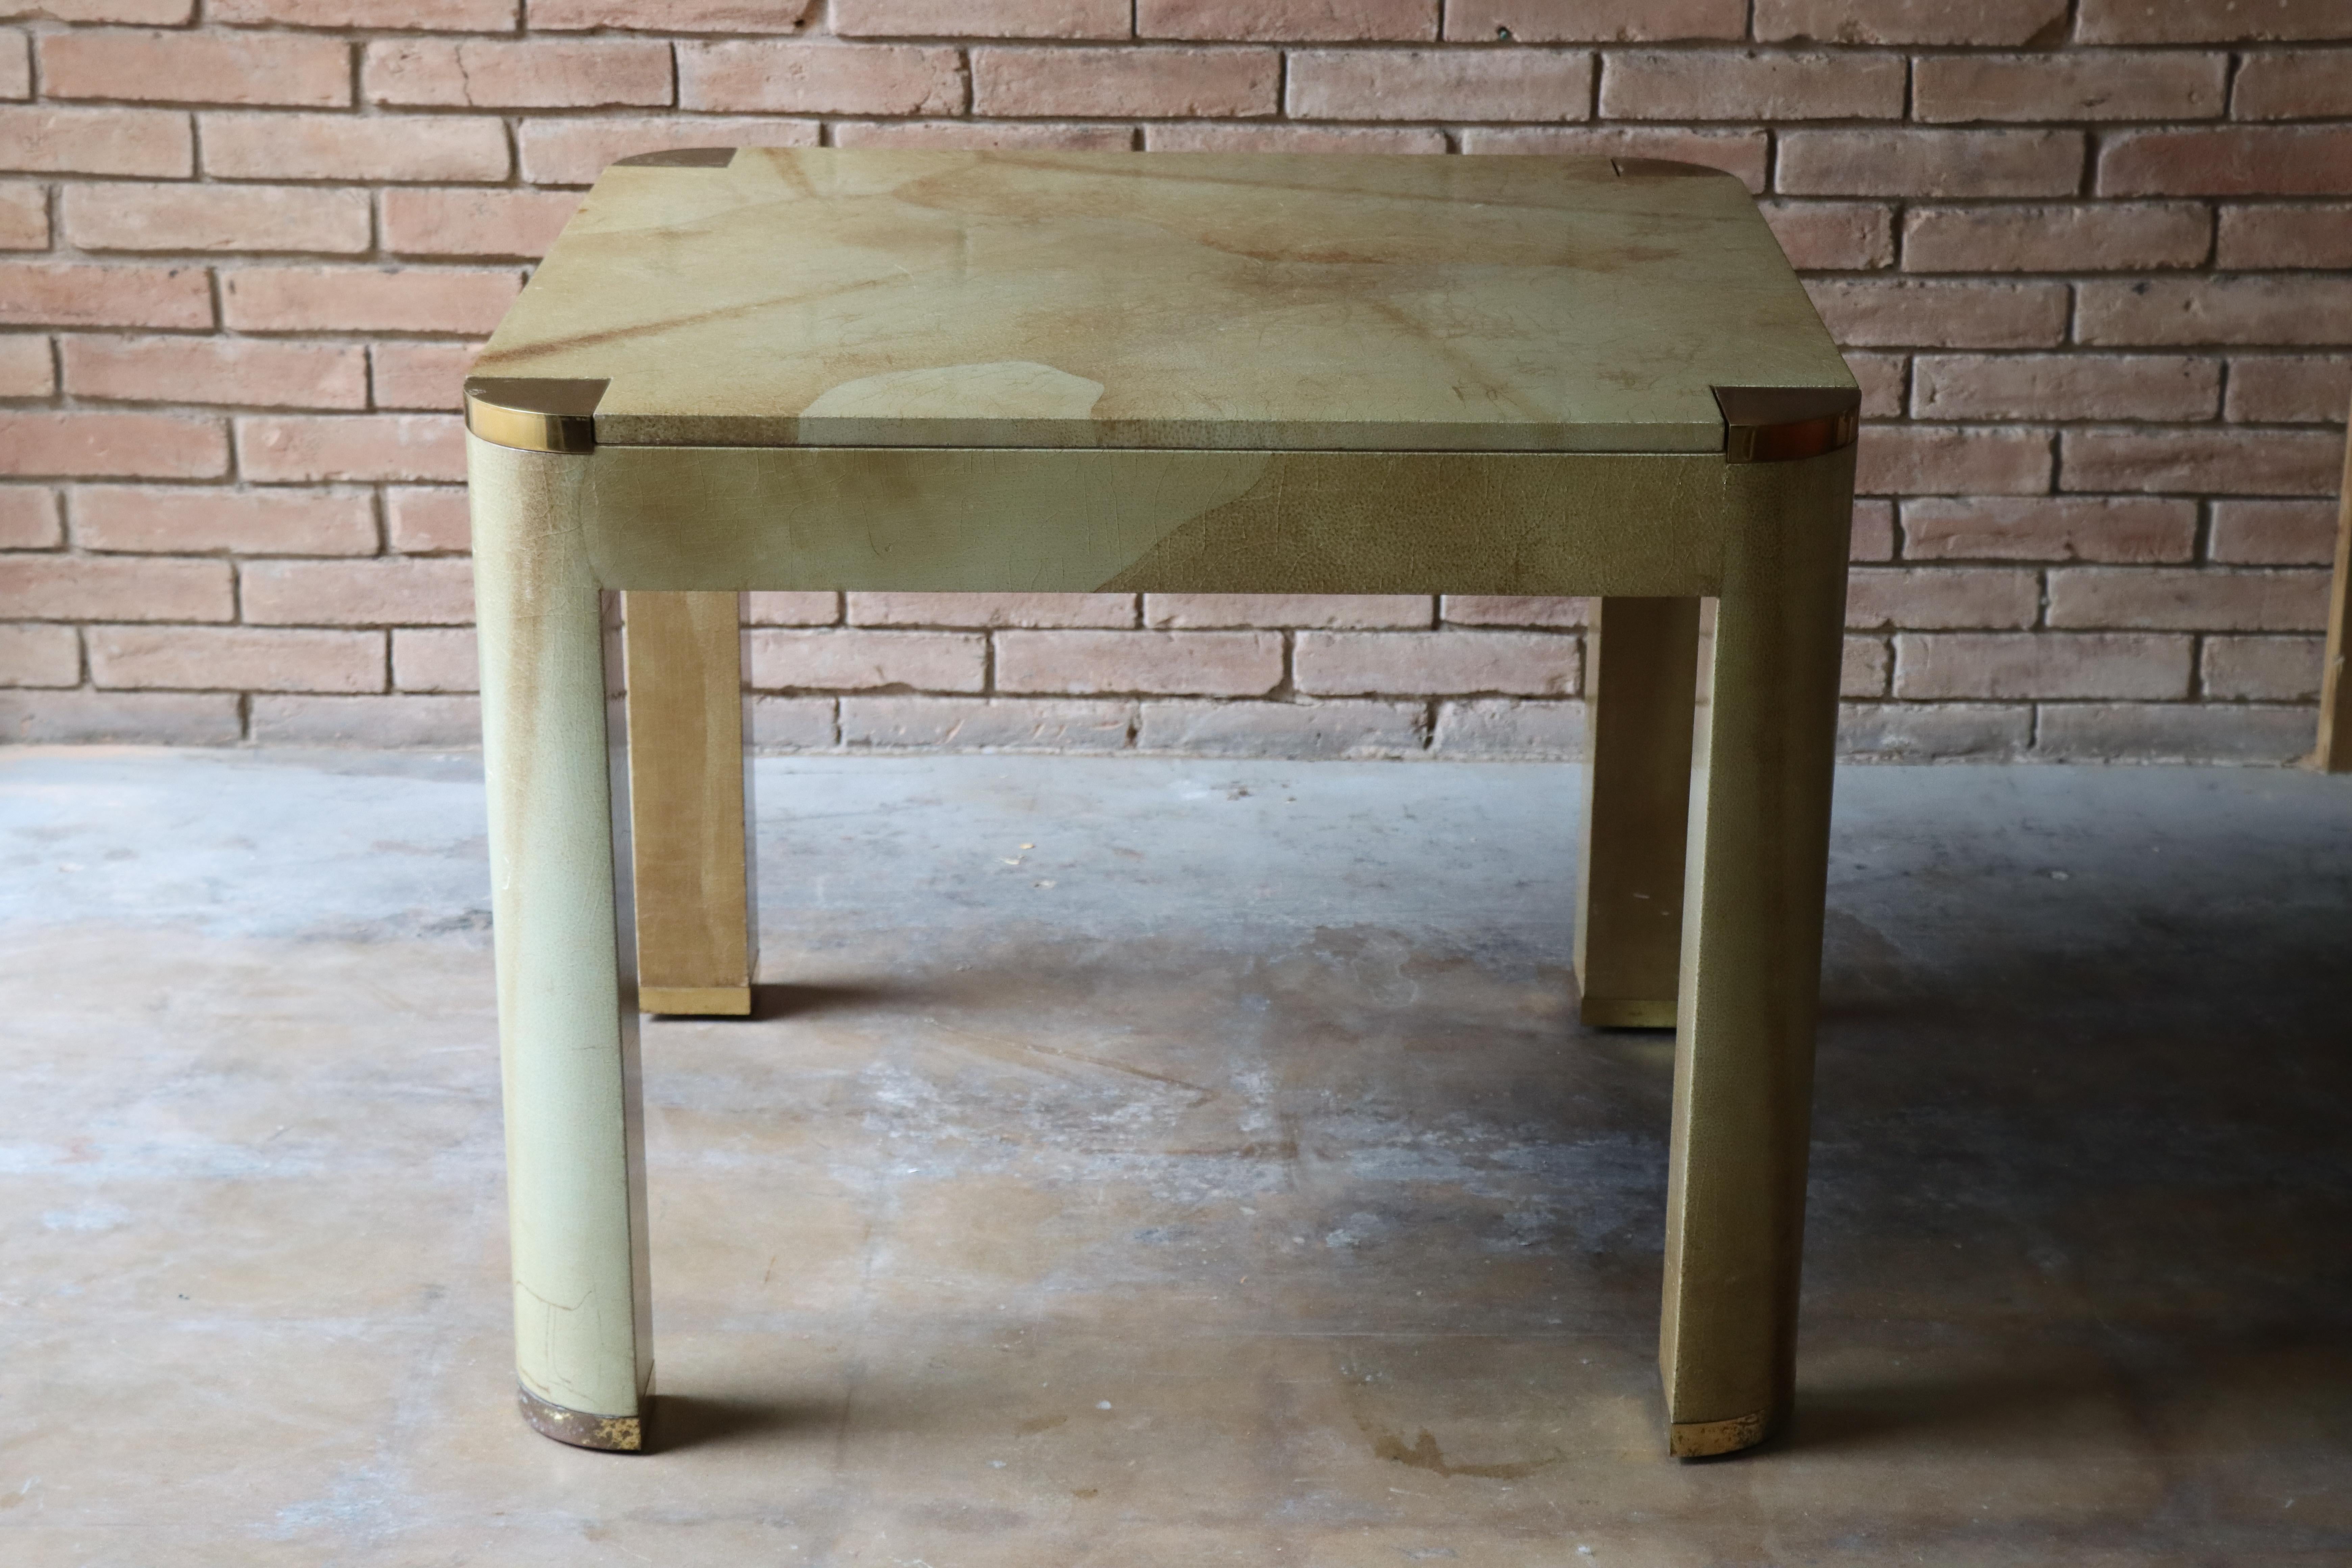 Seltener Backgammon-Tisch mit eckigen Beinen, entworfen von Karl Springer. Dieser schöne Tisch ist mit einem lackierten beigen Ziegenleder umhüllt und hat ein Backgammon-Brett aus Leder in Braun, Beige und Koralle. Die oberen Kanten und Füße sind